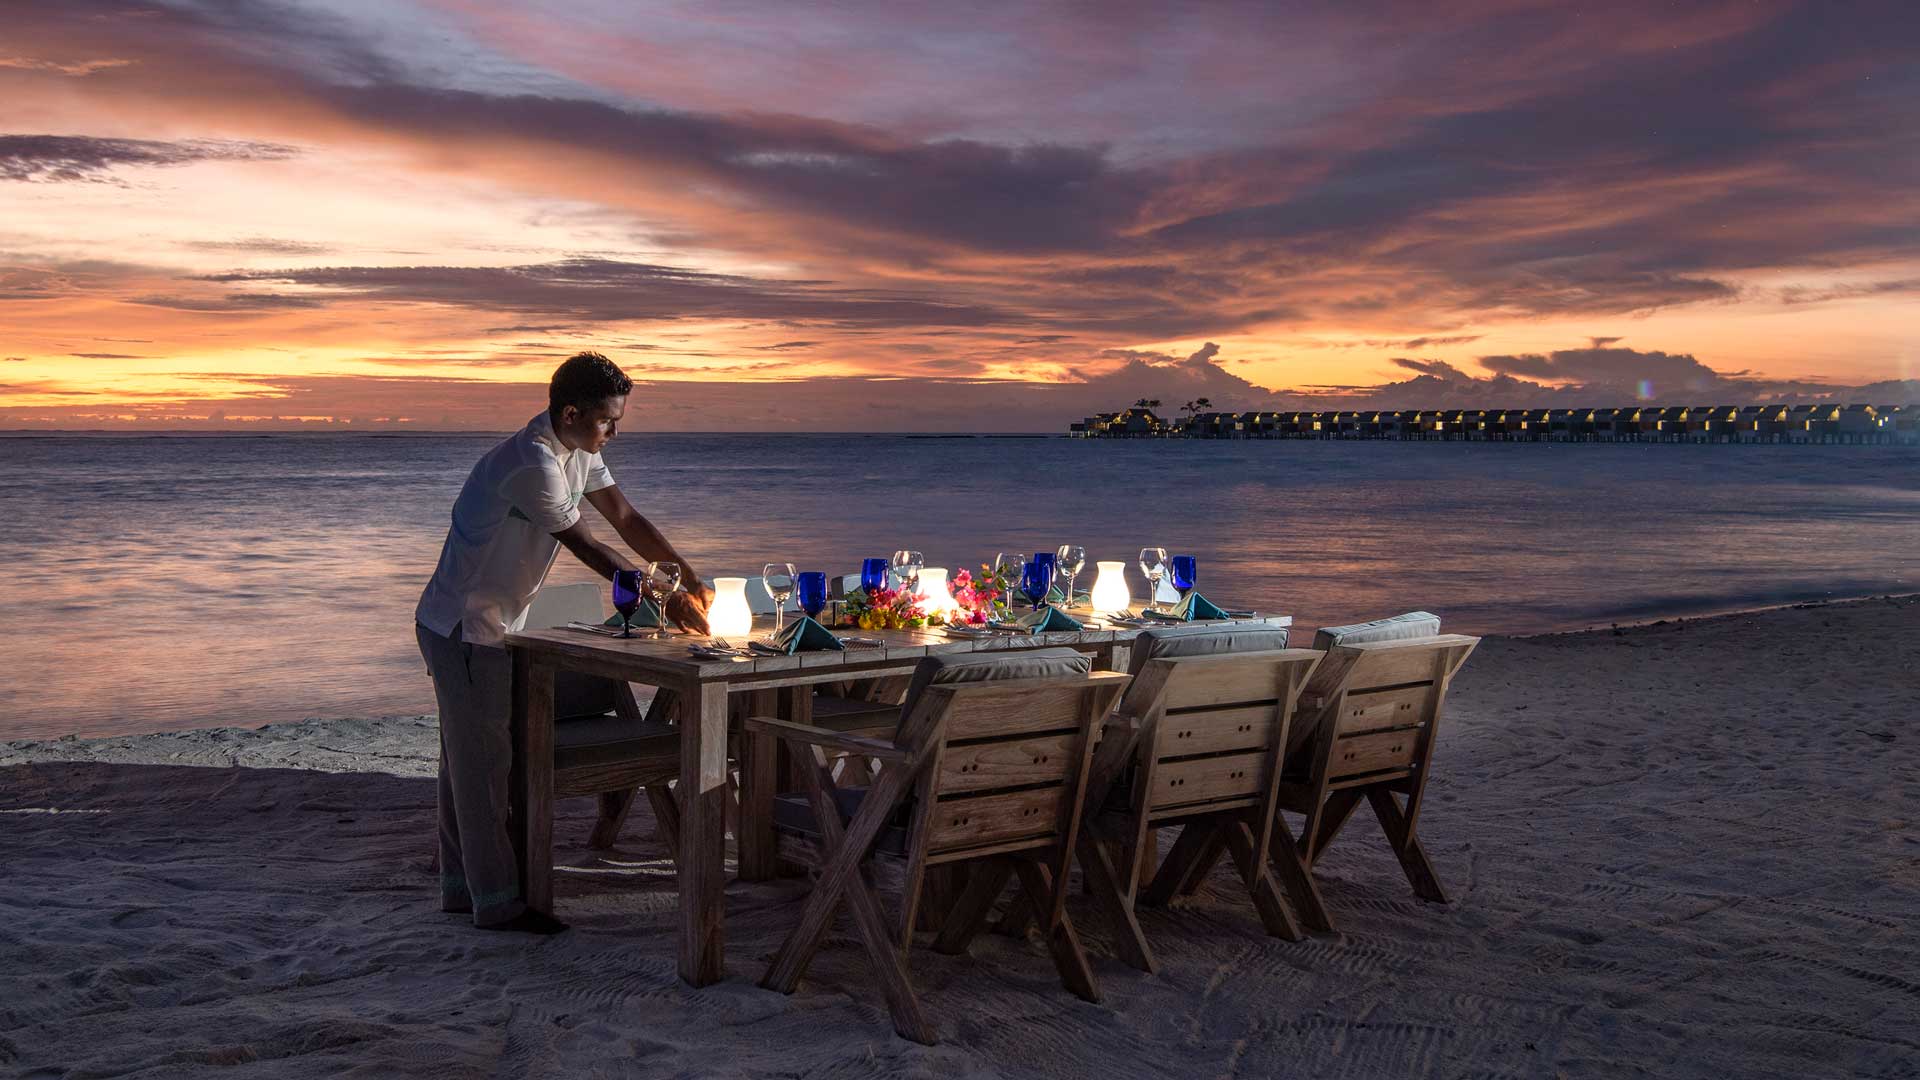 Cena-sulla-spiaggia-Emerald-Maldives-cantina-subacquea-Robb-Report-Italia